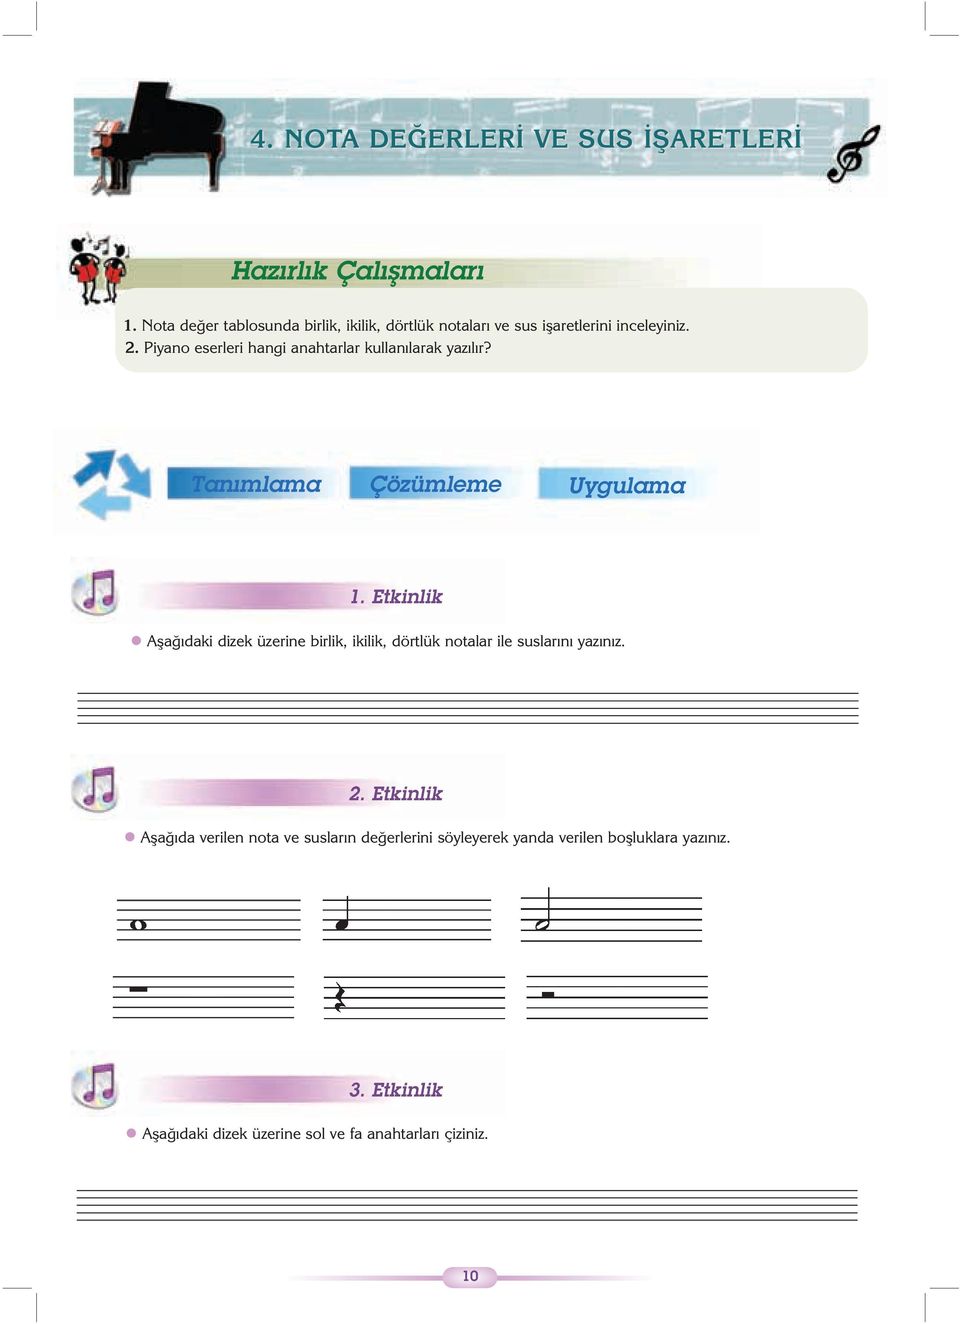 Piyano eserleri hangi anahtarlar kullanýlarak yazýlýr? Tanýmlama Çözümleme Uygulama 1.